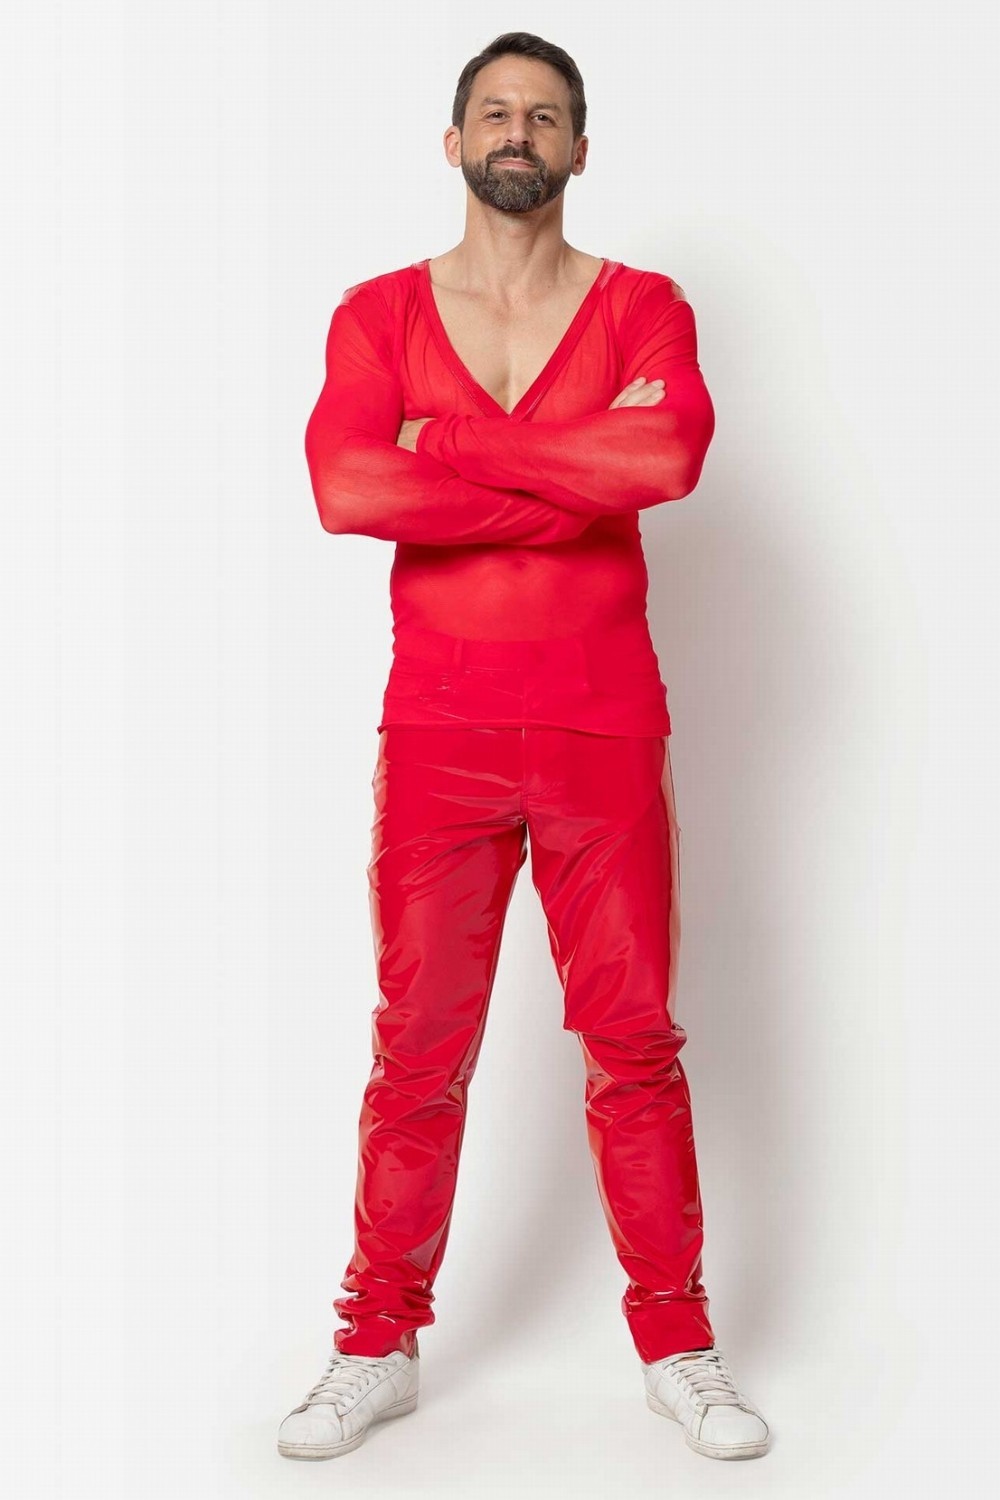 Ali, camiseta hombre malla roja - Patrice Catanzaro Página Oficial